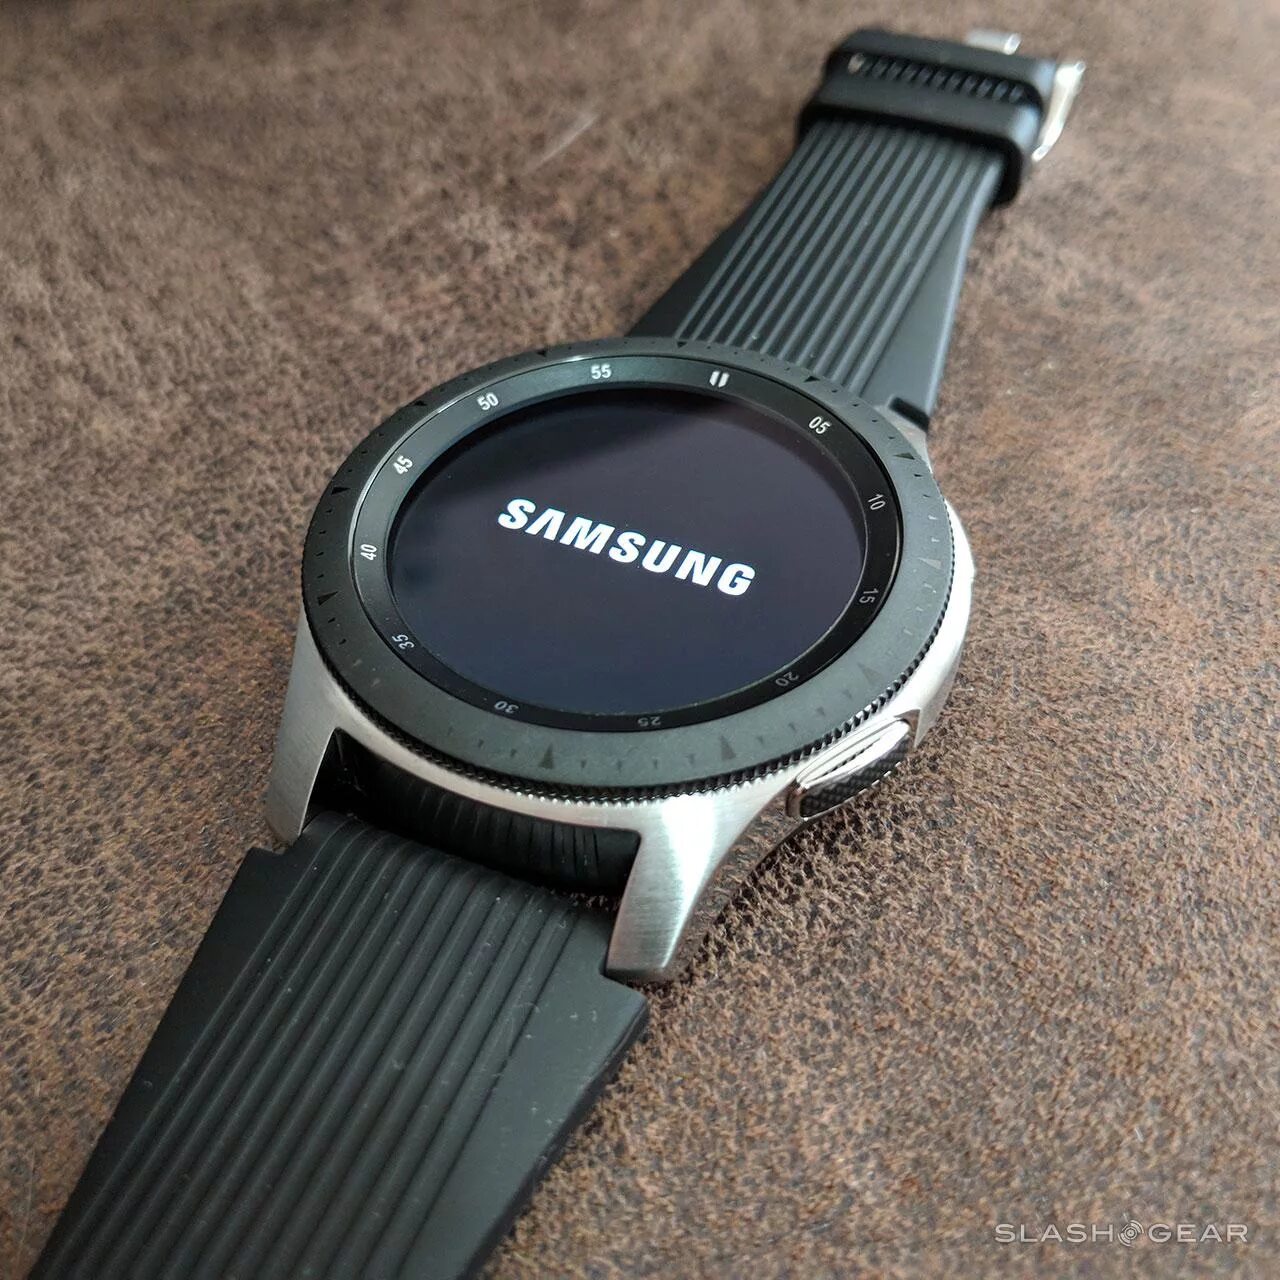 Samsung watch 1. Samsung Galaxy watch r800. Samsung Galaxy watch SM-r800. Samsung Galaxy watch 46mm SM-r800 Silver. Samsung Galaxy watch 46mm Silver r800.